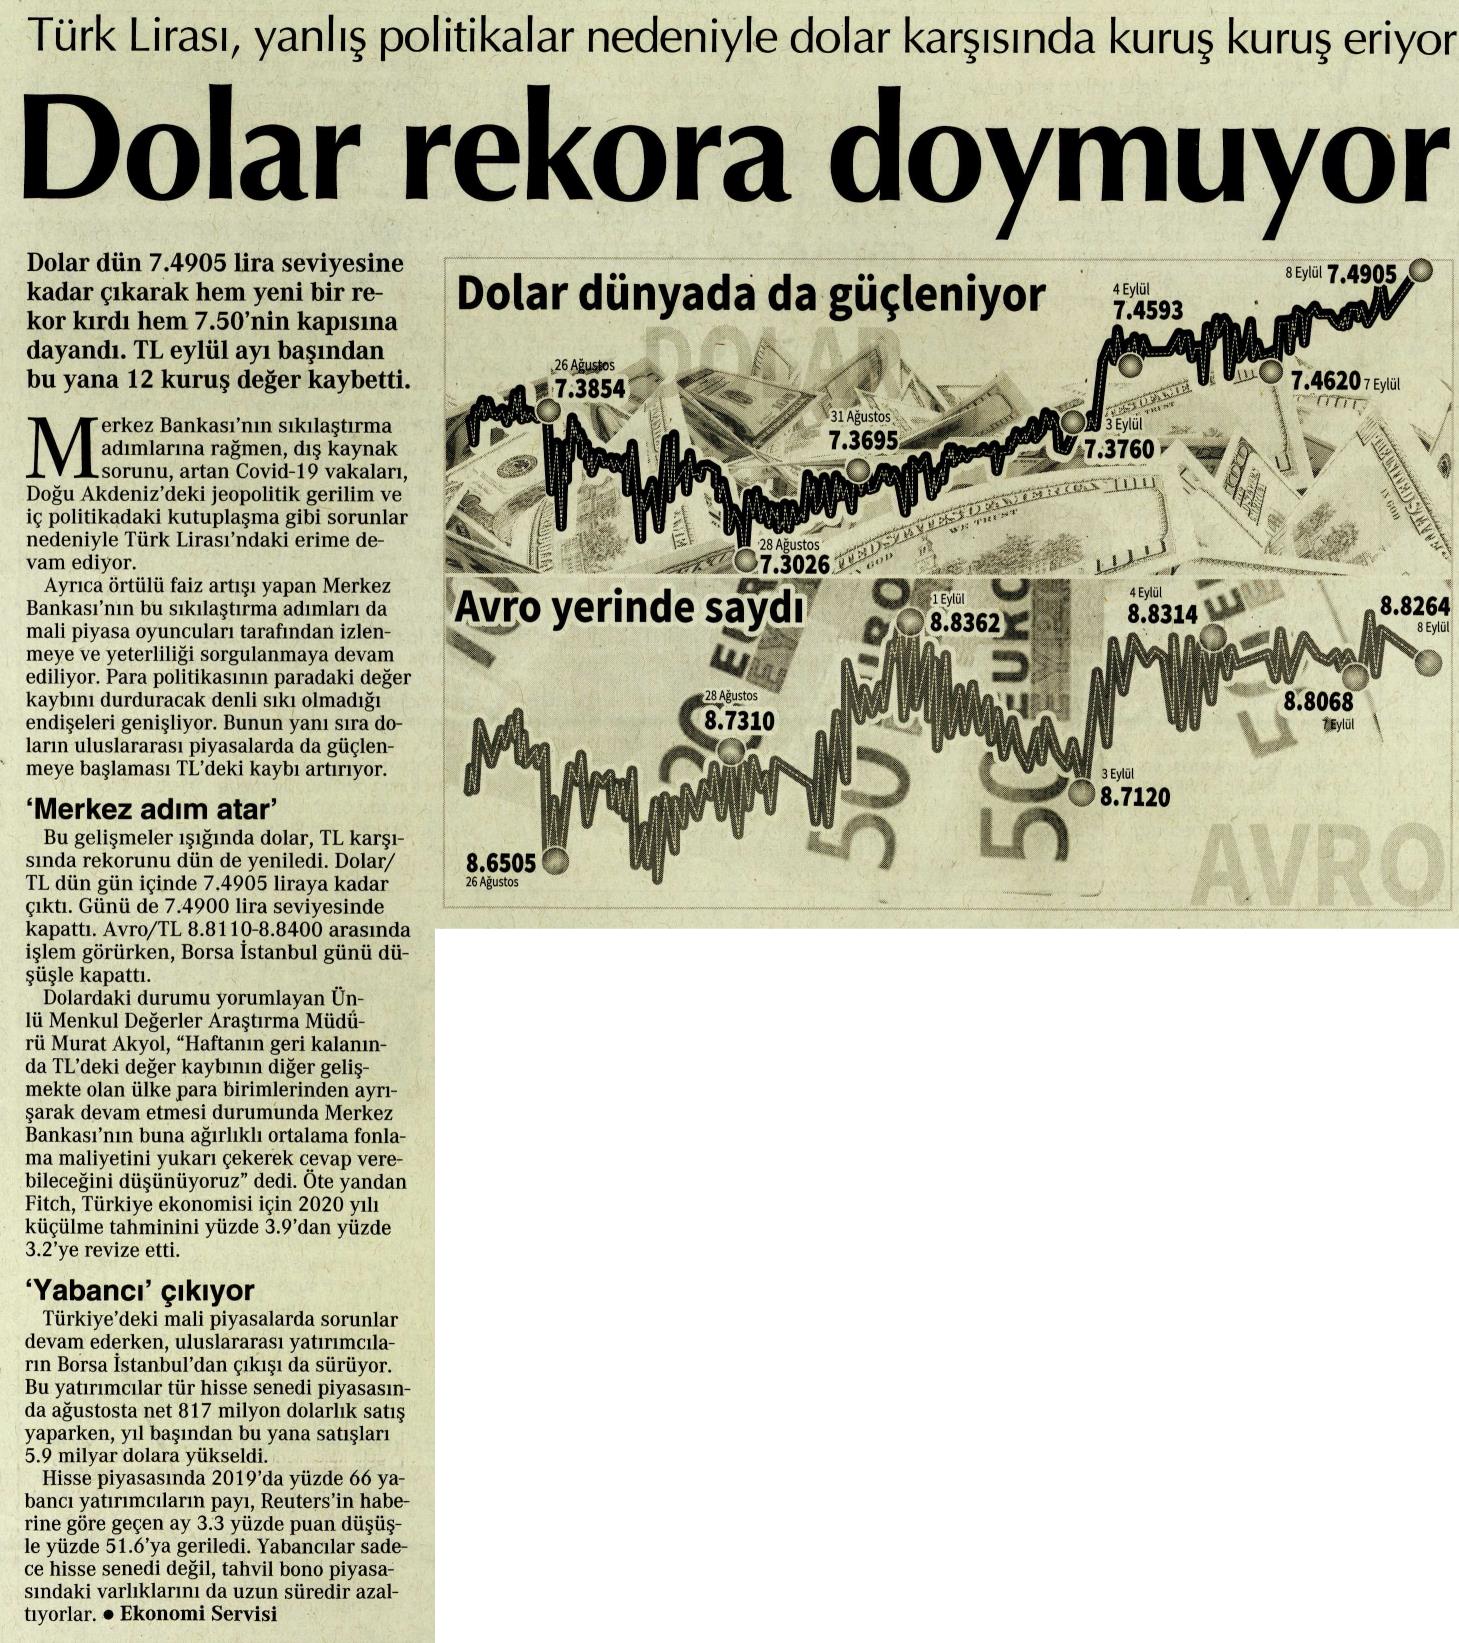 Dolar Rekora Doymuyor, Sözcü Gazetesi